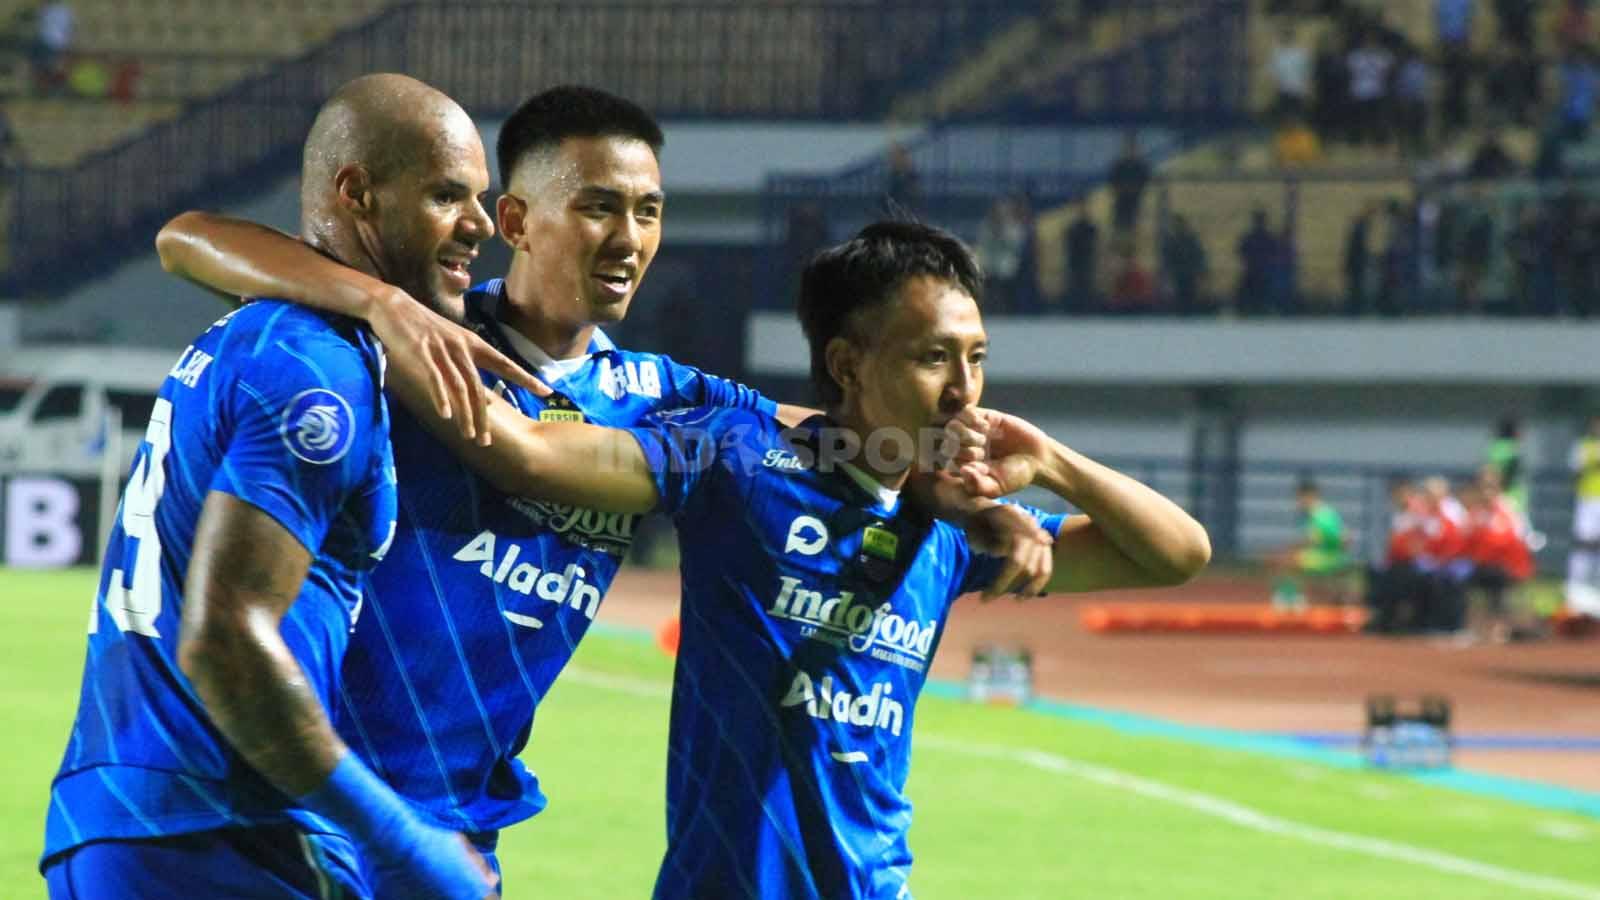 Gelandang Persib Bandung, Beckham Putra Nugraha bersama rekan-rekannya merayakan golnya ke gawang PSS, yang membuat skor berubah 4-1 untuk keunggulan Persib, pada pertandingan pekan ke-17 kompetisi Liga 1 2023-2024 di Stadion GBLA, Kota Bandung, Sabtu (28